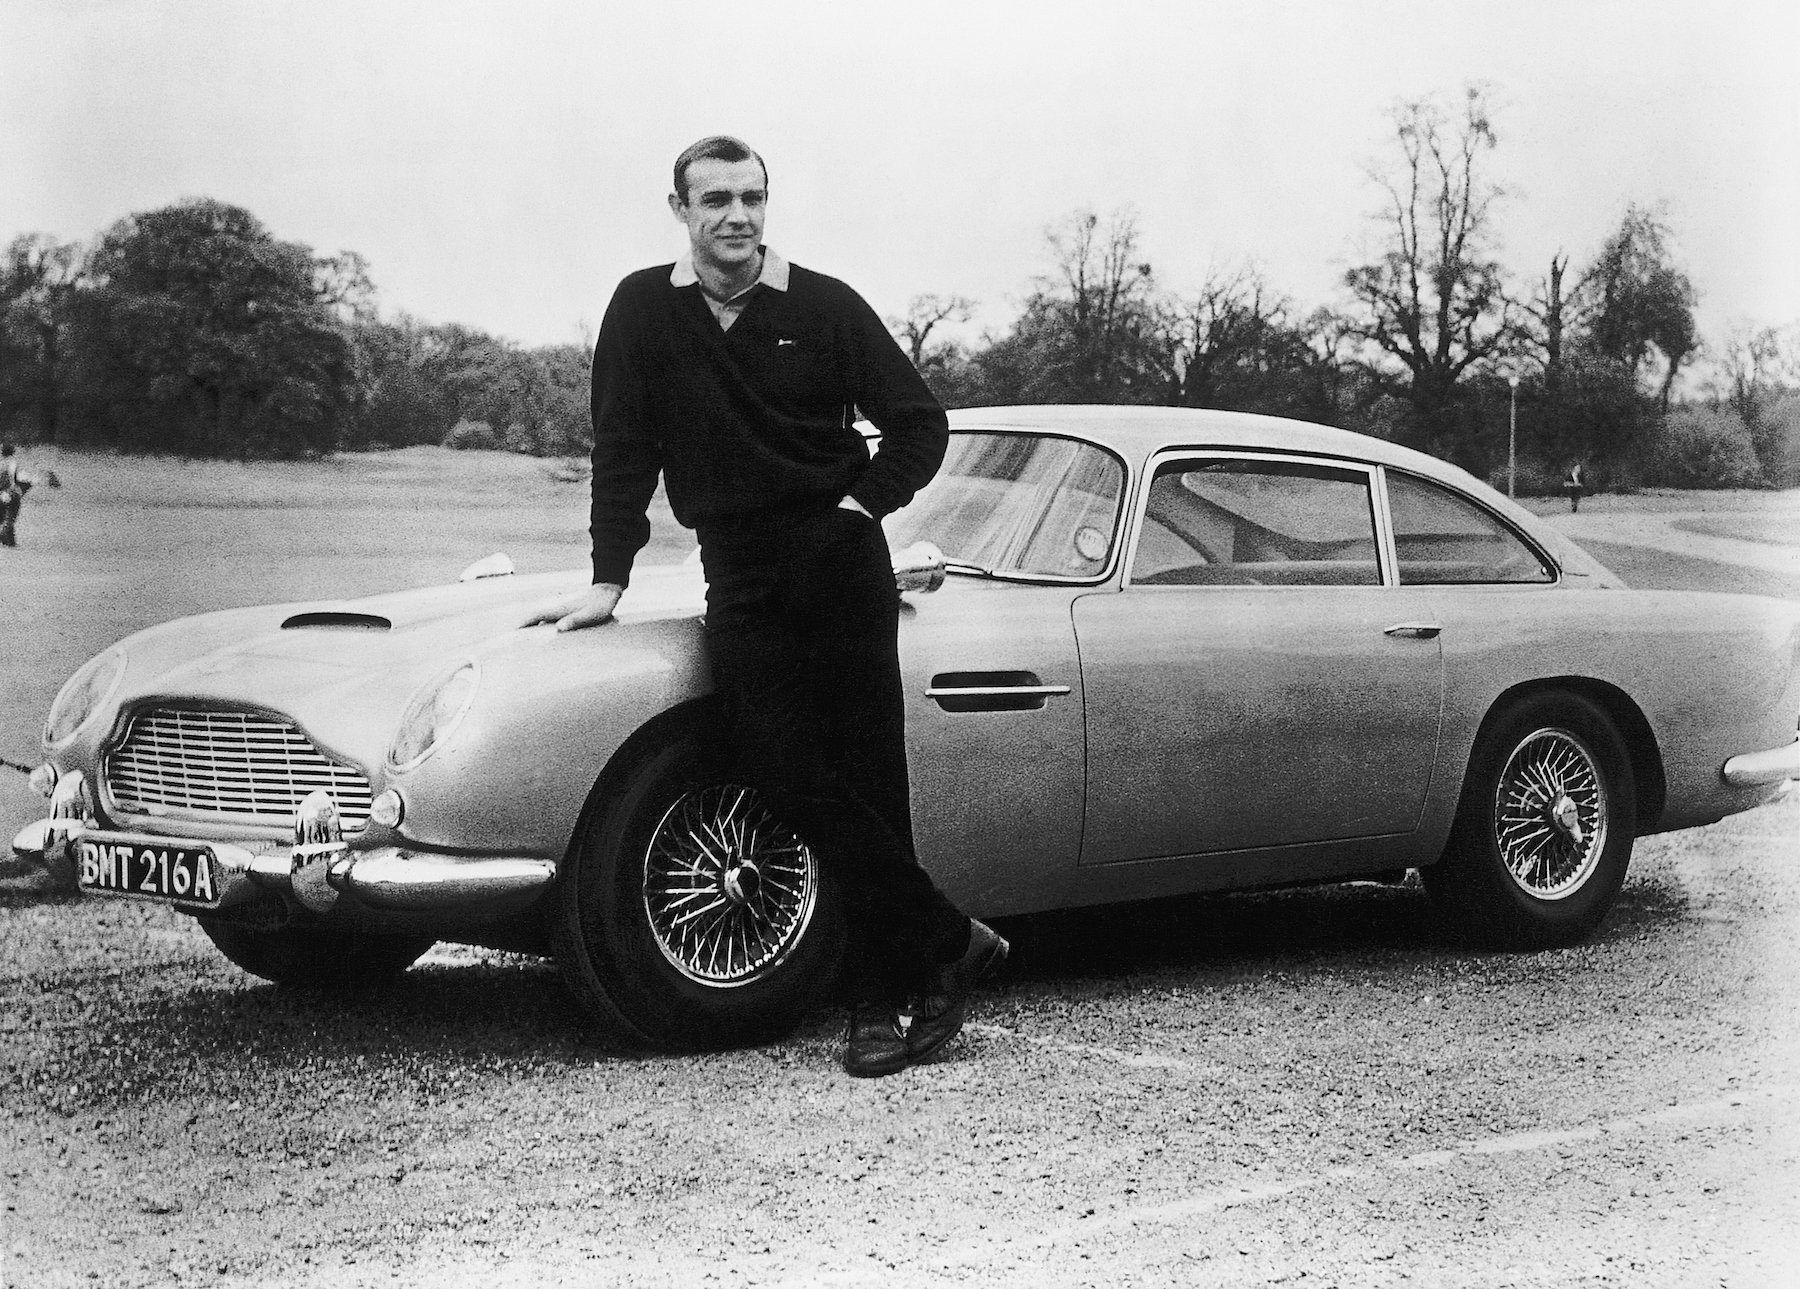 James Bond actor Sean Connery shows off his Aston Martin car